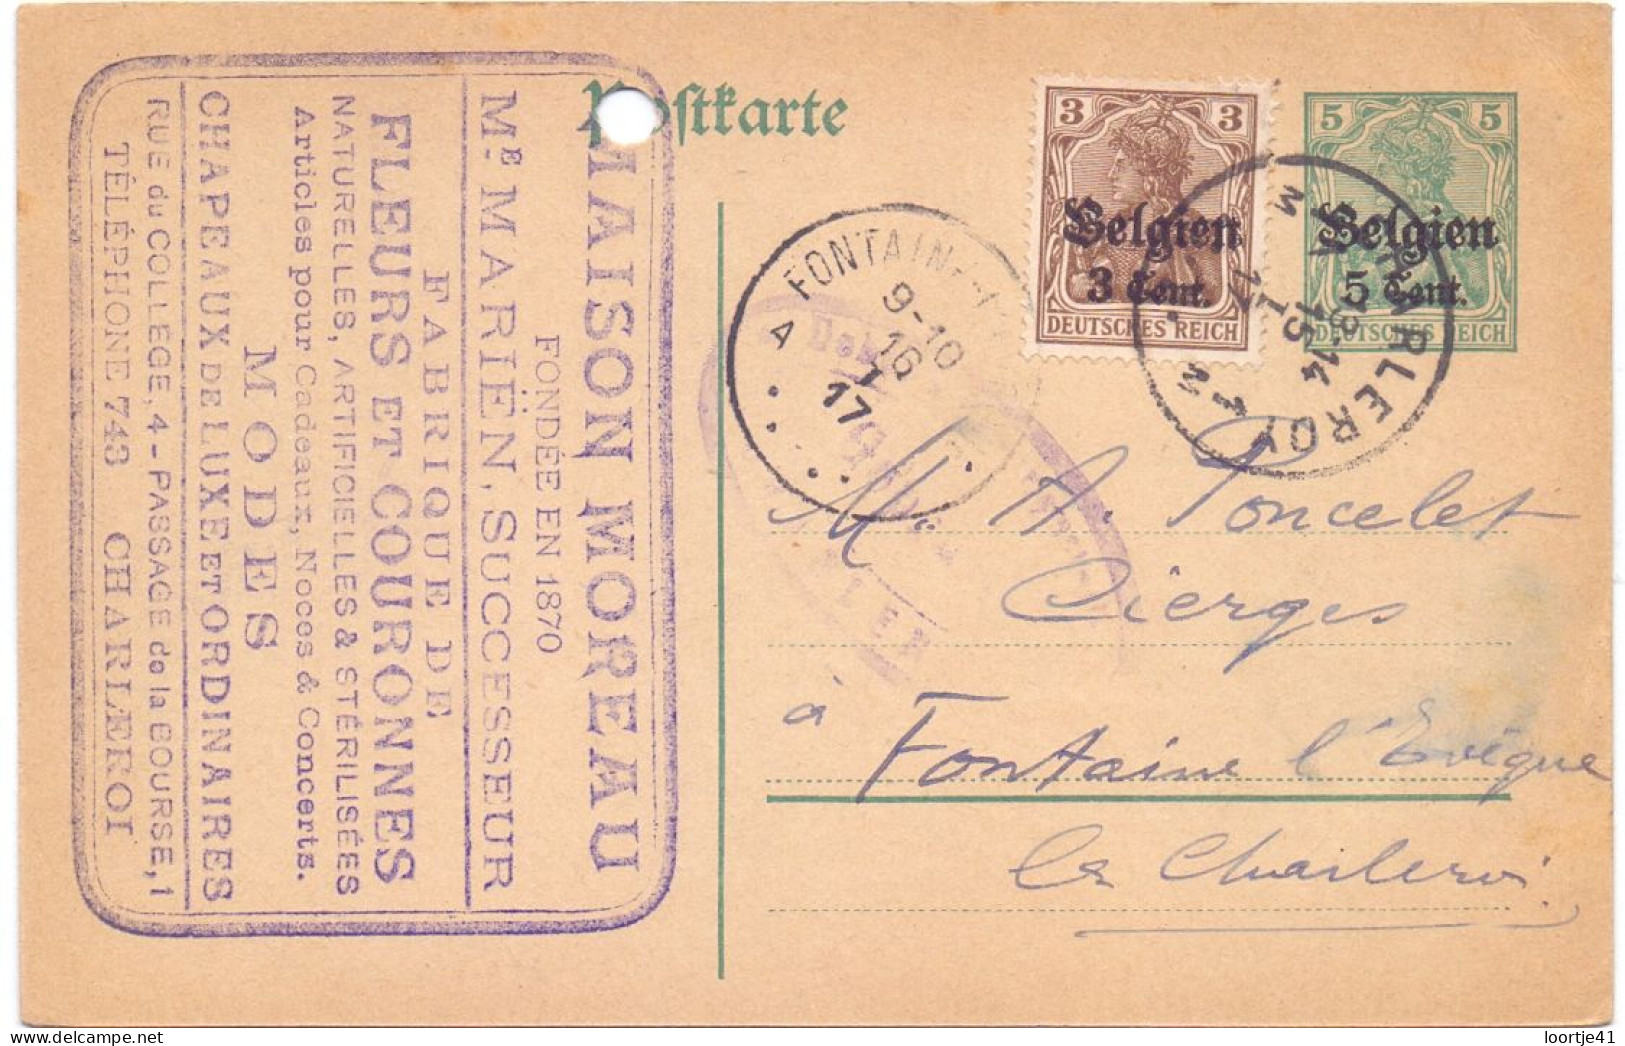 Briefkaart Carte Postale Postkarte Duitse Bezetting - Maison Moreau Charleroi à Fontaine L'Eveque - 1917 - Duitse Bezetting